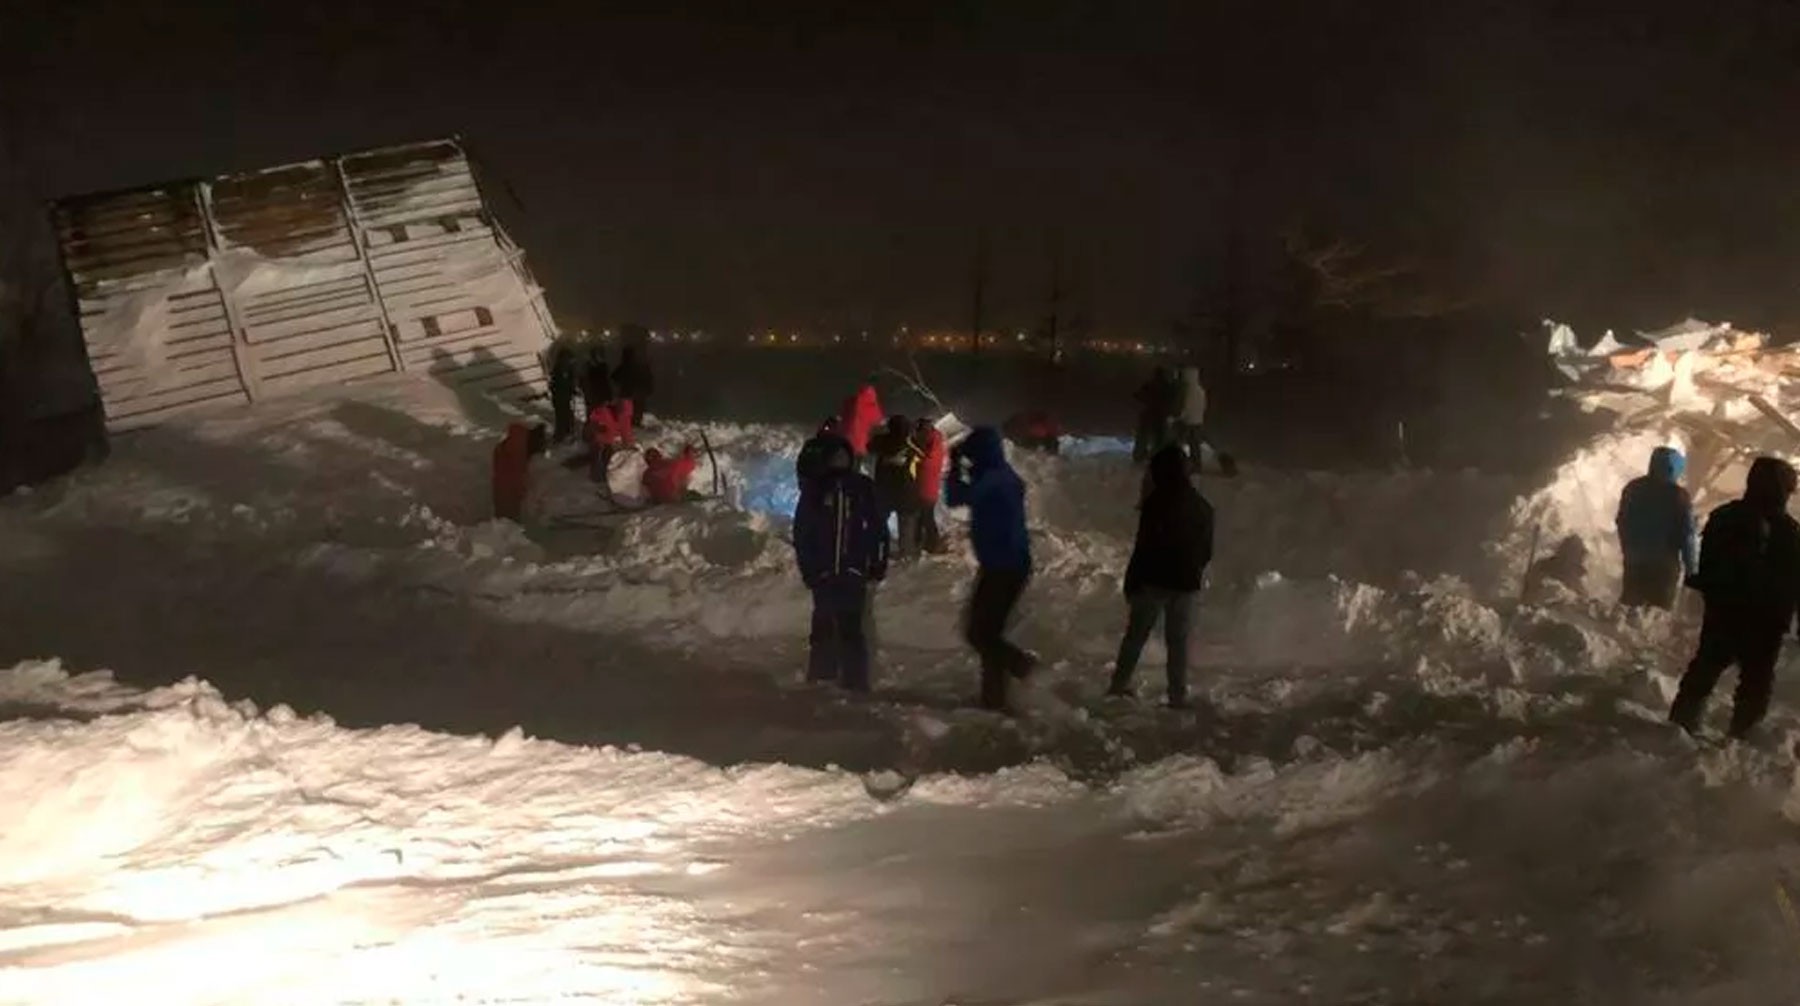 Dailystorm - В Норильске задержали диспетчера по делу о гибели людей из-за лавины